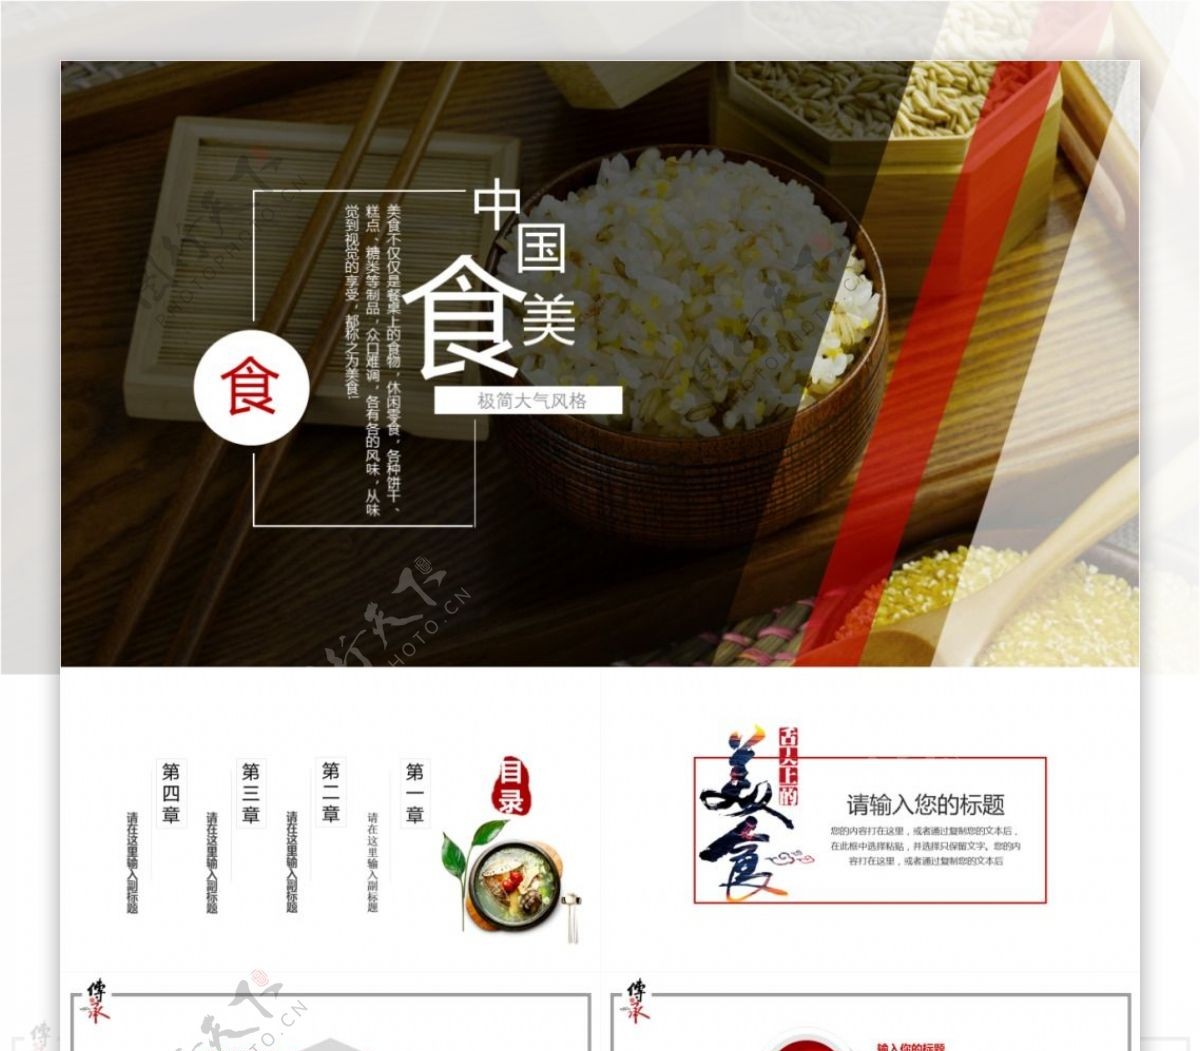 简约中国风美食宣传发布PPT模板